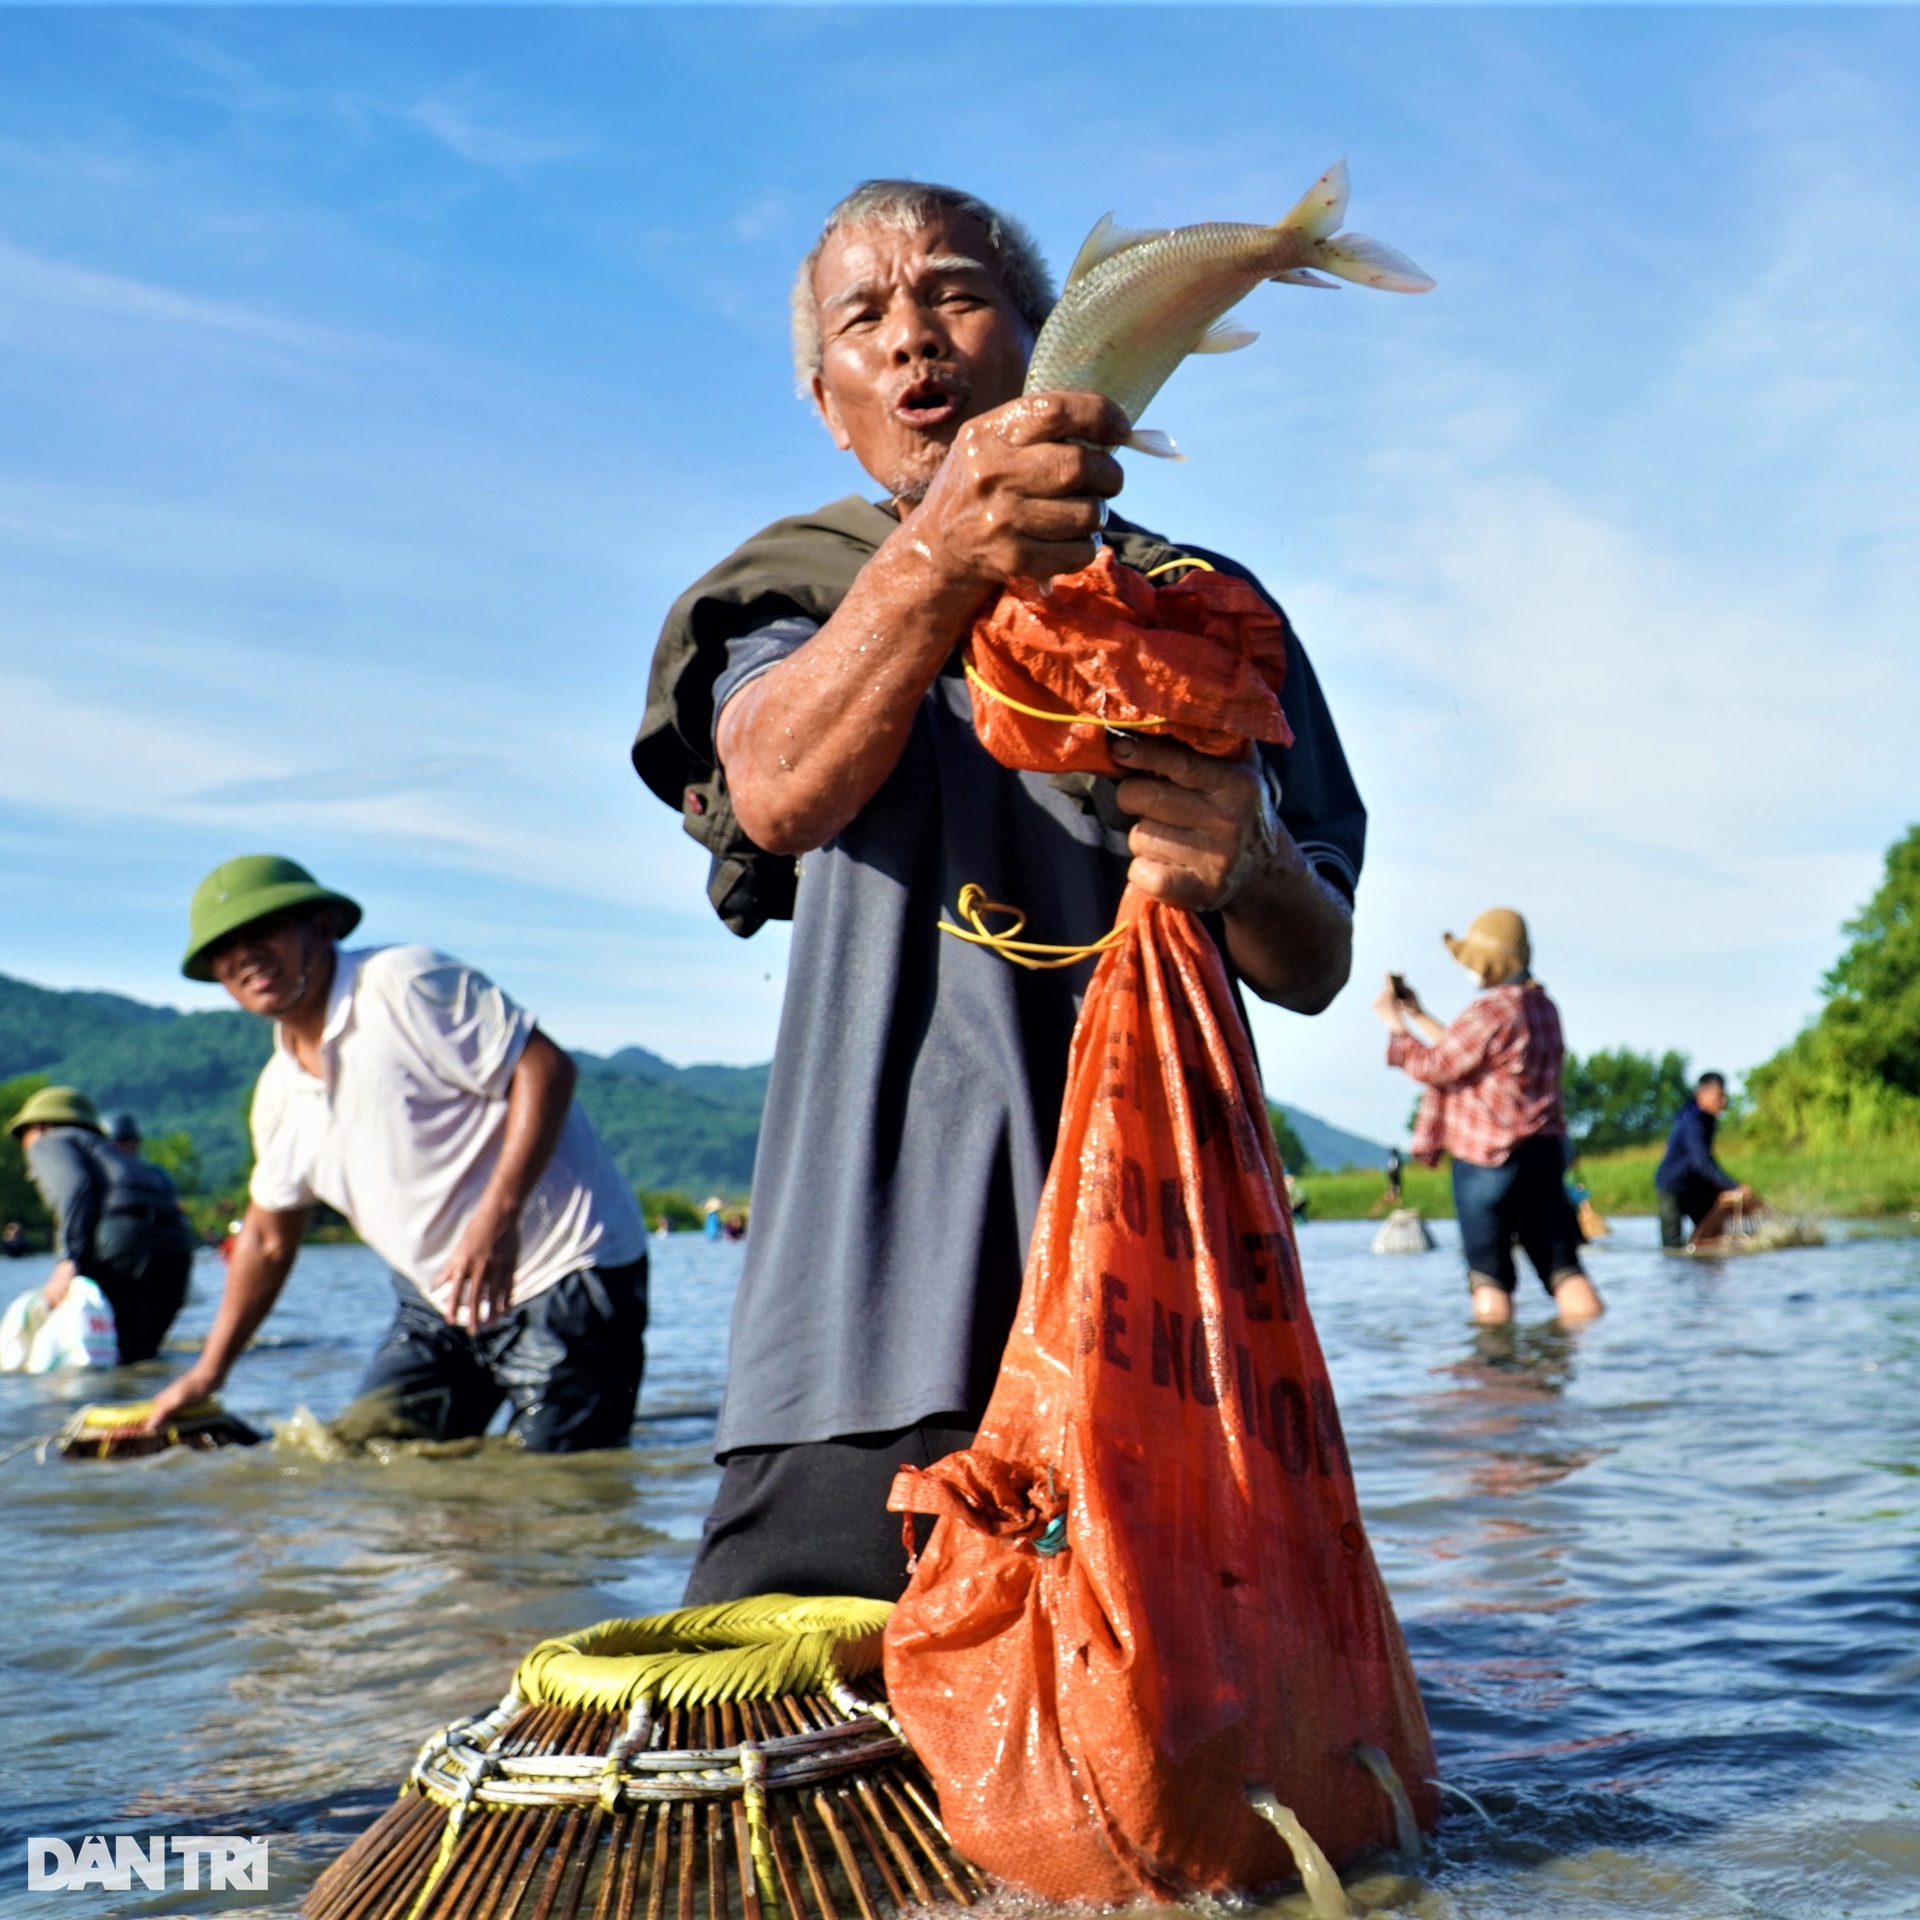 Hàng trăm người hò reo đánh bắt cá tại lễ hội hơn 300 năm tuổi - 8